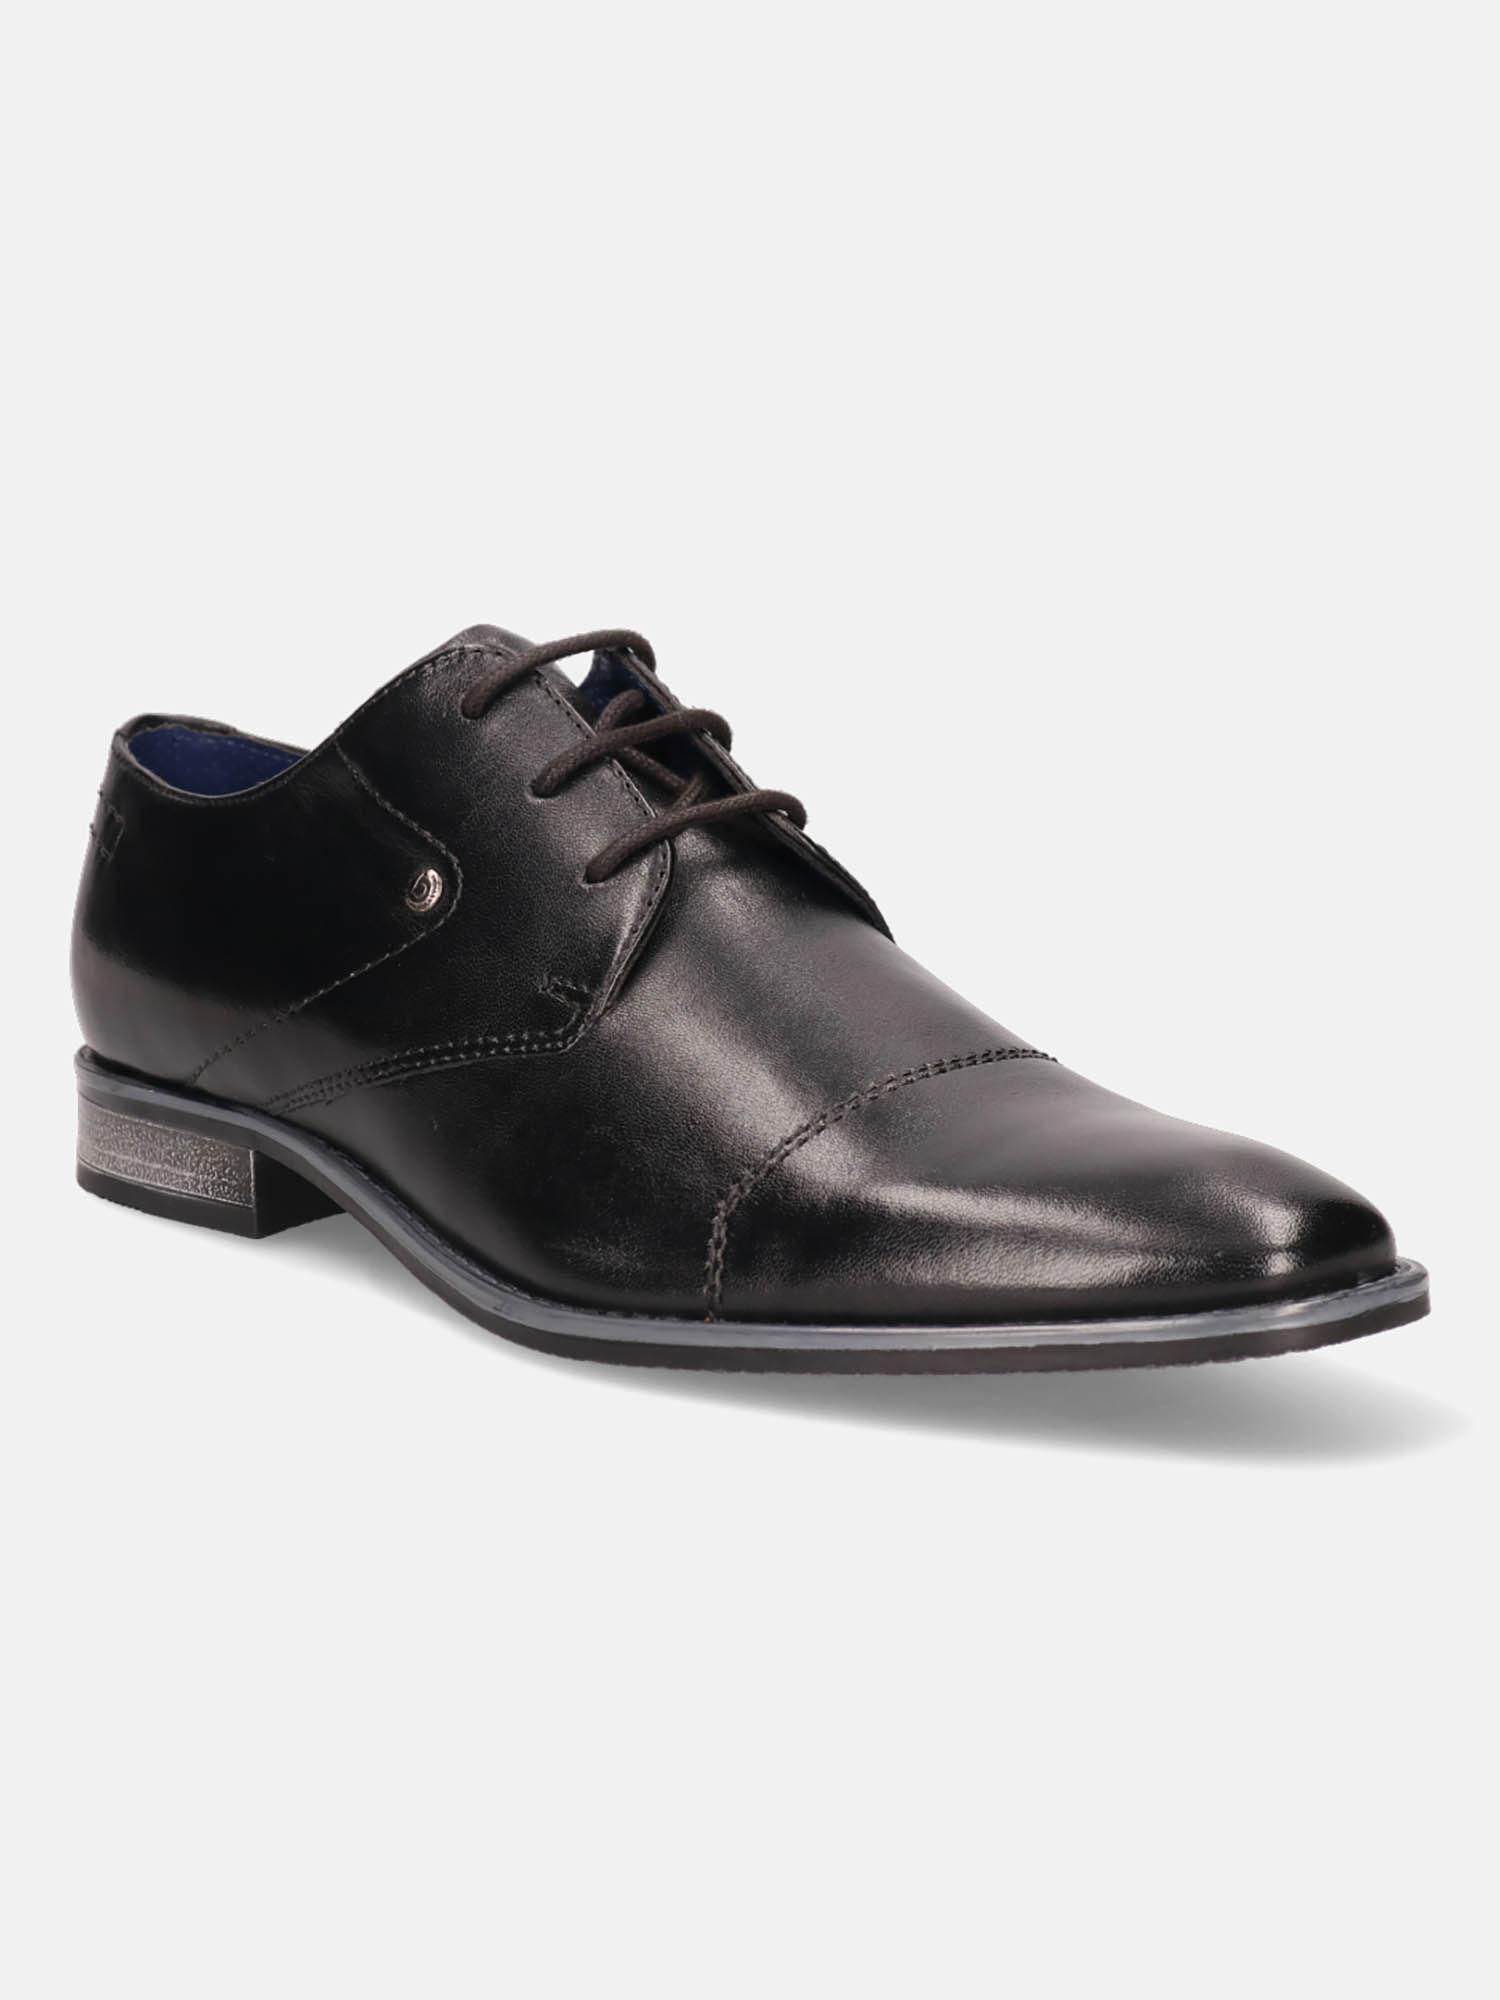 rinaldo eco black men leather derby formal shoes